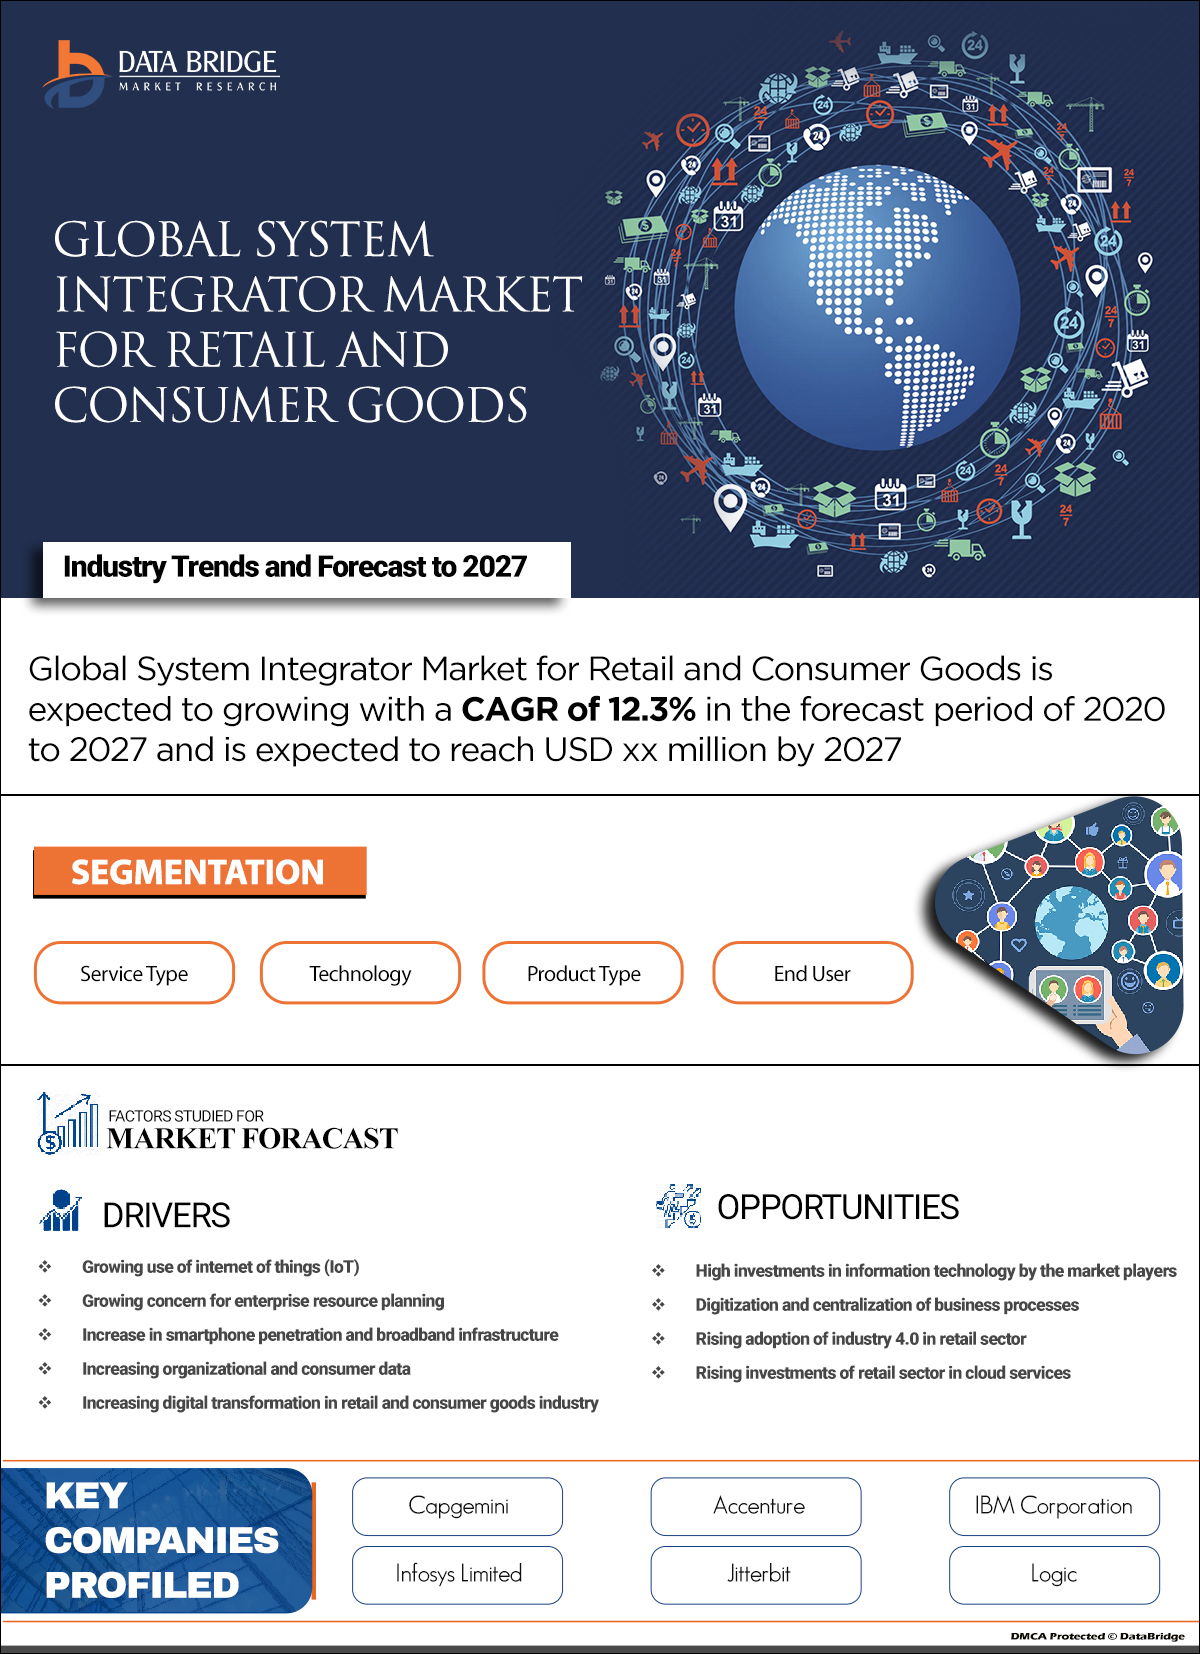 System Integrator Market